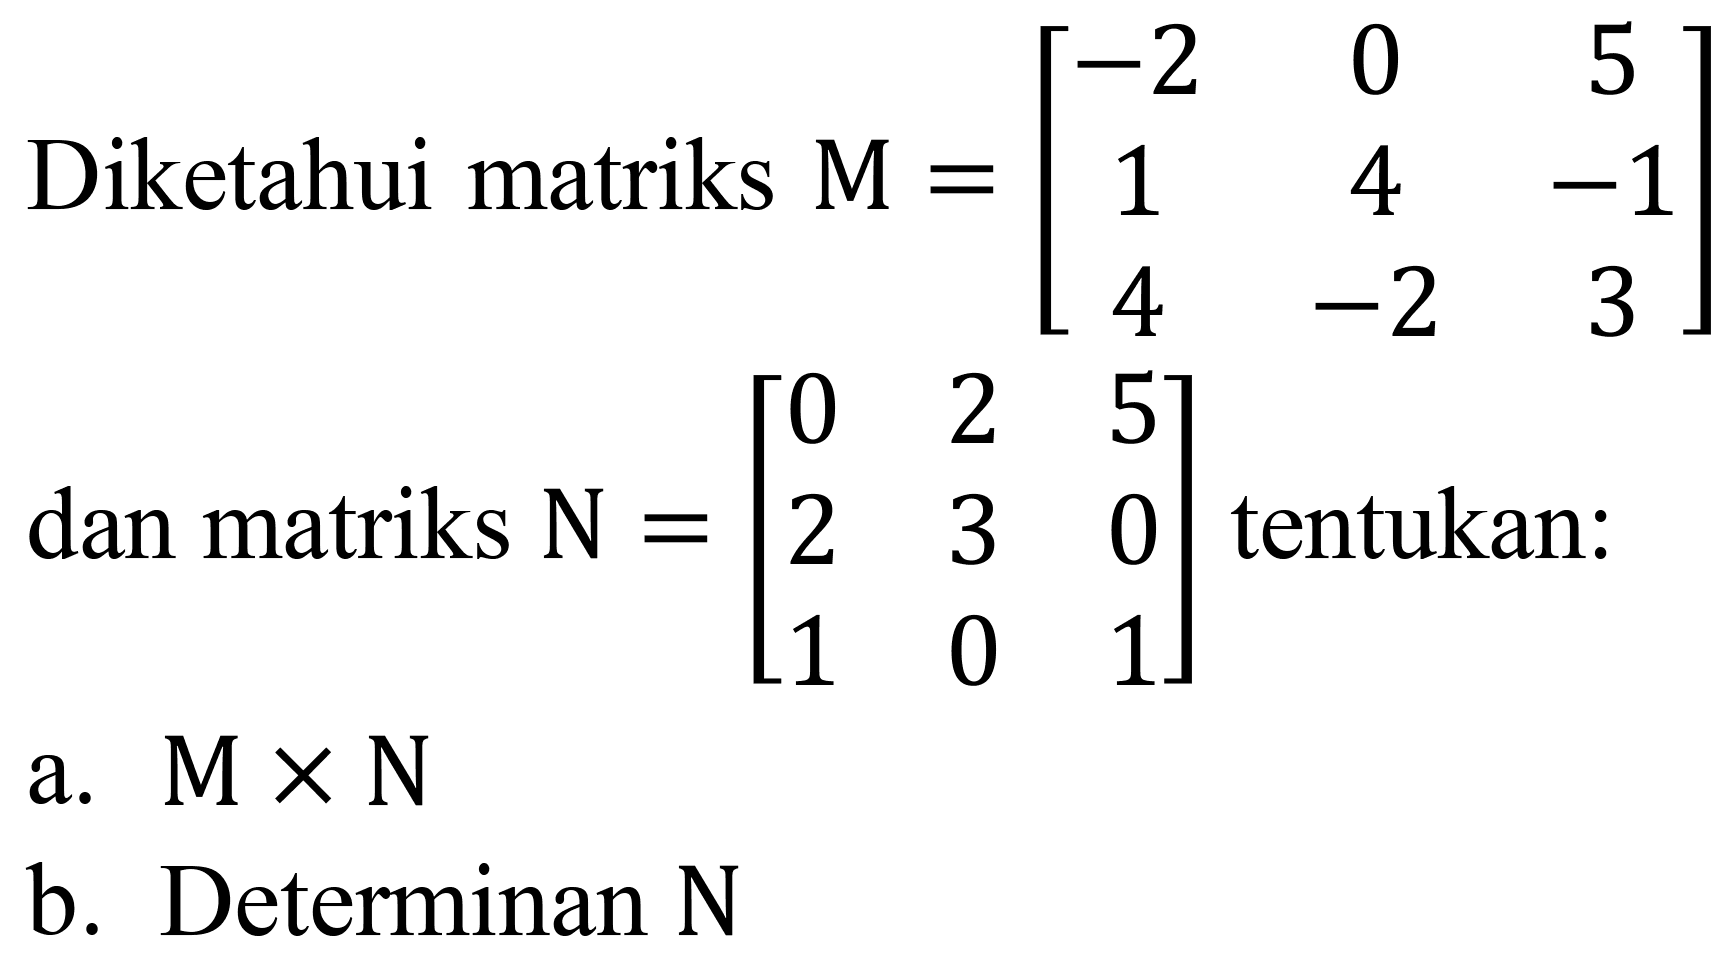 Diketahui matriks  M=[-2  0  5  1  4  -1  4  -2  3]  dan matriks  N=[0  2  5  2  3  0  1  0  1]  tentukan:
a.  M x N 
b. Determinan  N 